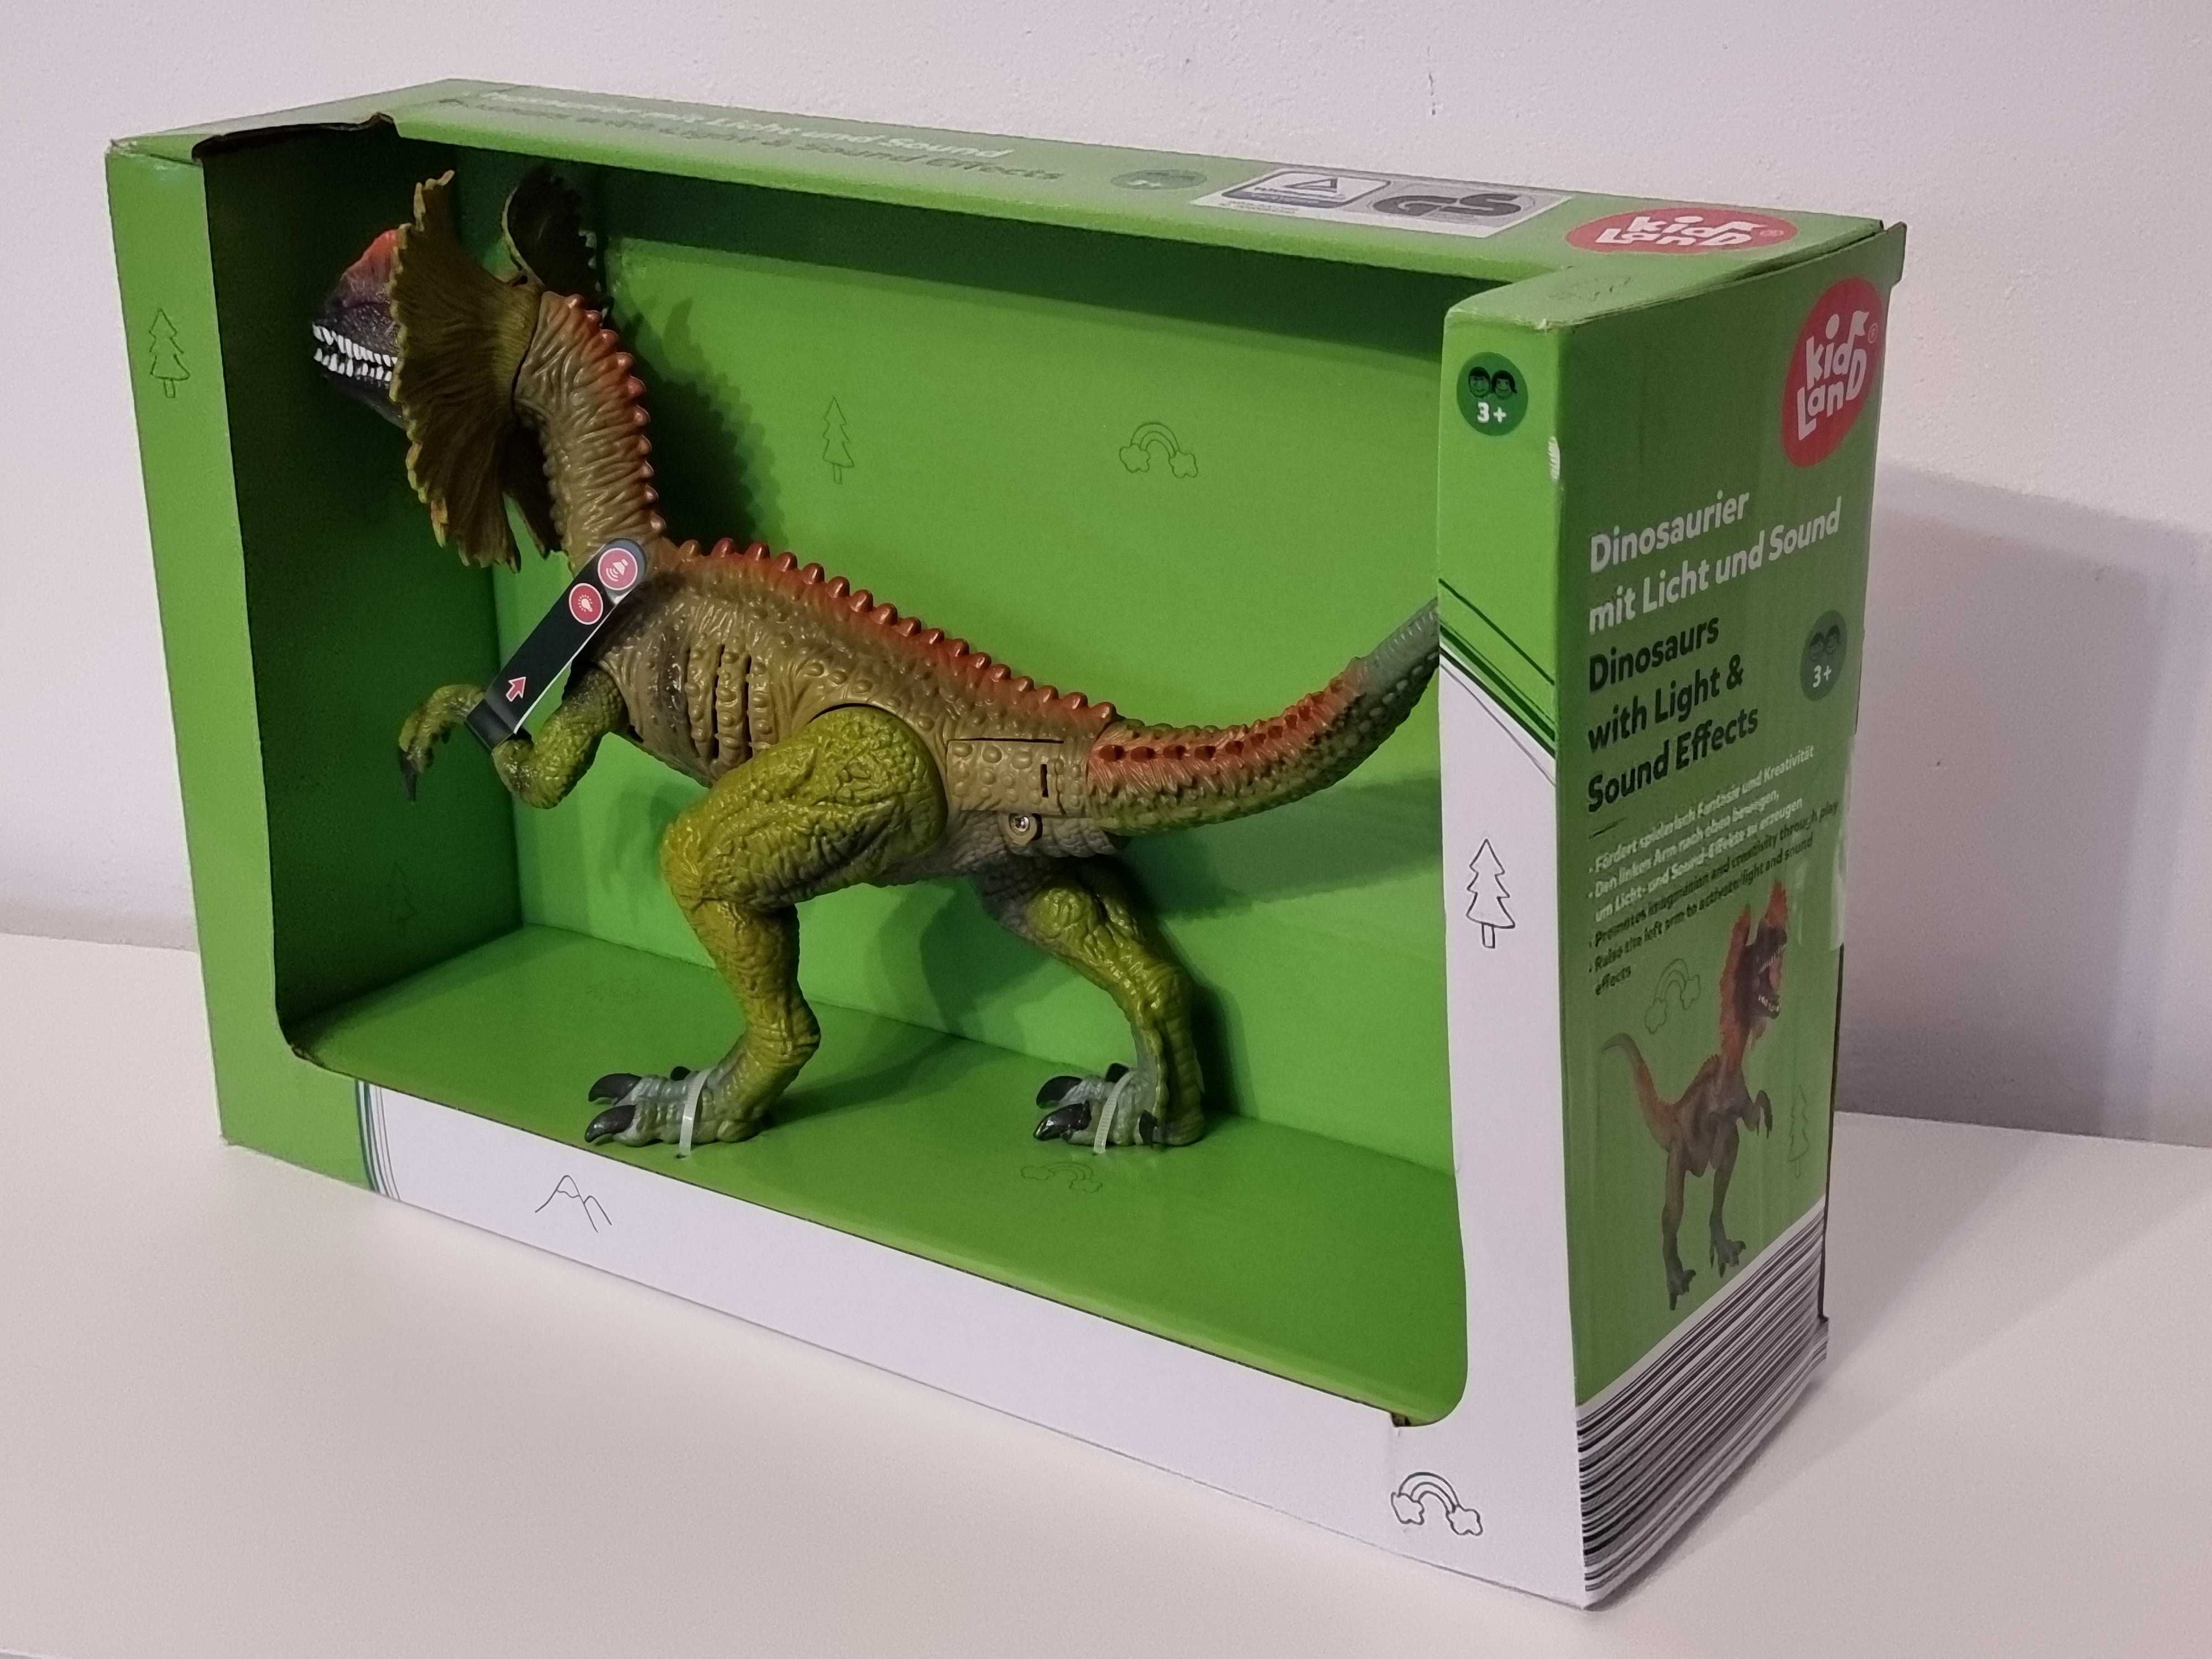 Dilophosaurus cu baterii - Dinozaur cu lumina si sunete